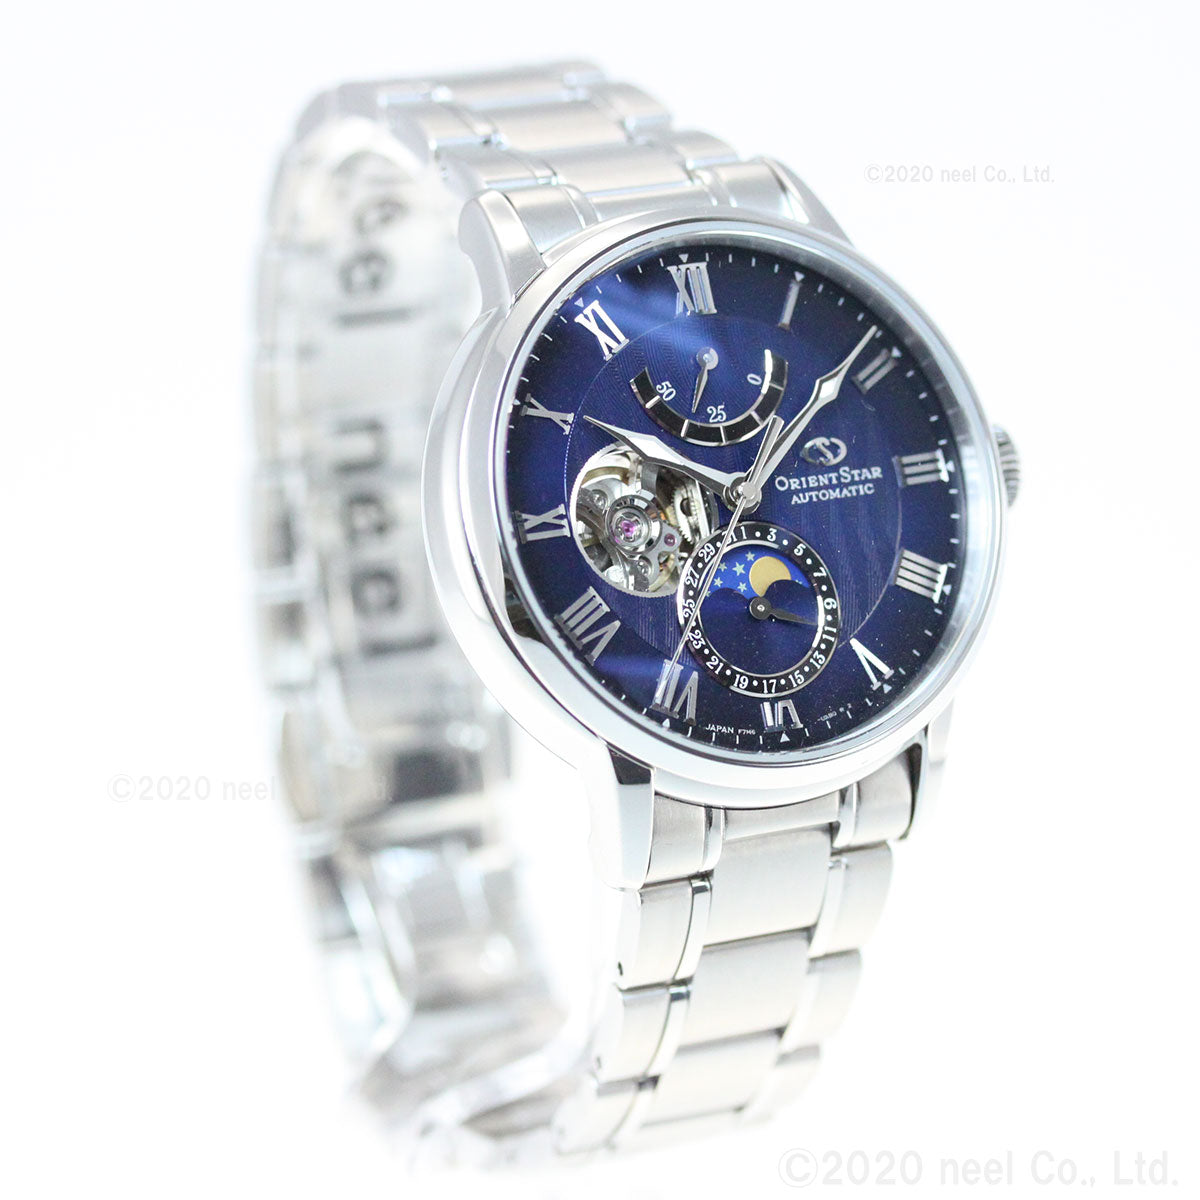 オリエントスター ORIENT STAR 腕時計 メンズ 自動巻き 機械式 クラシック CLASSIC メカニカルムーンフェイズ RK-AY0103L